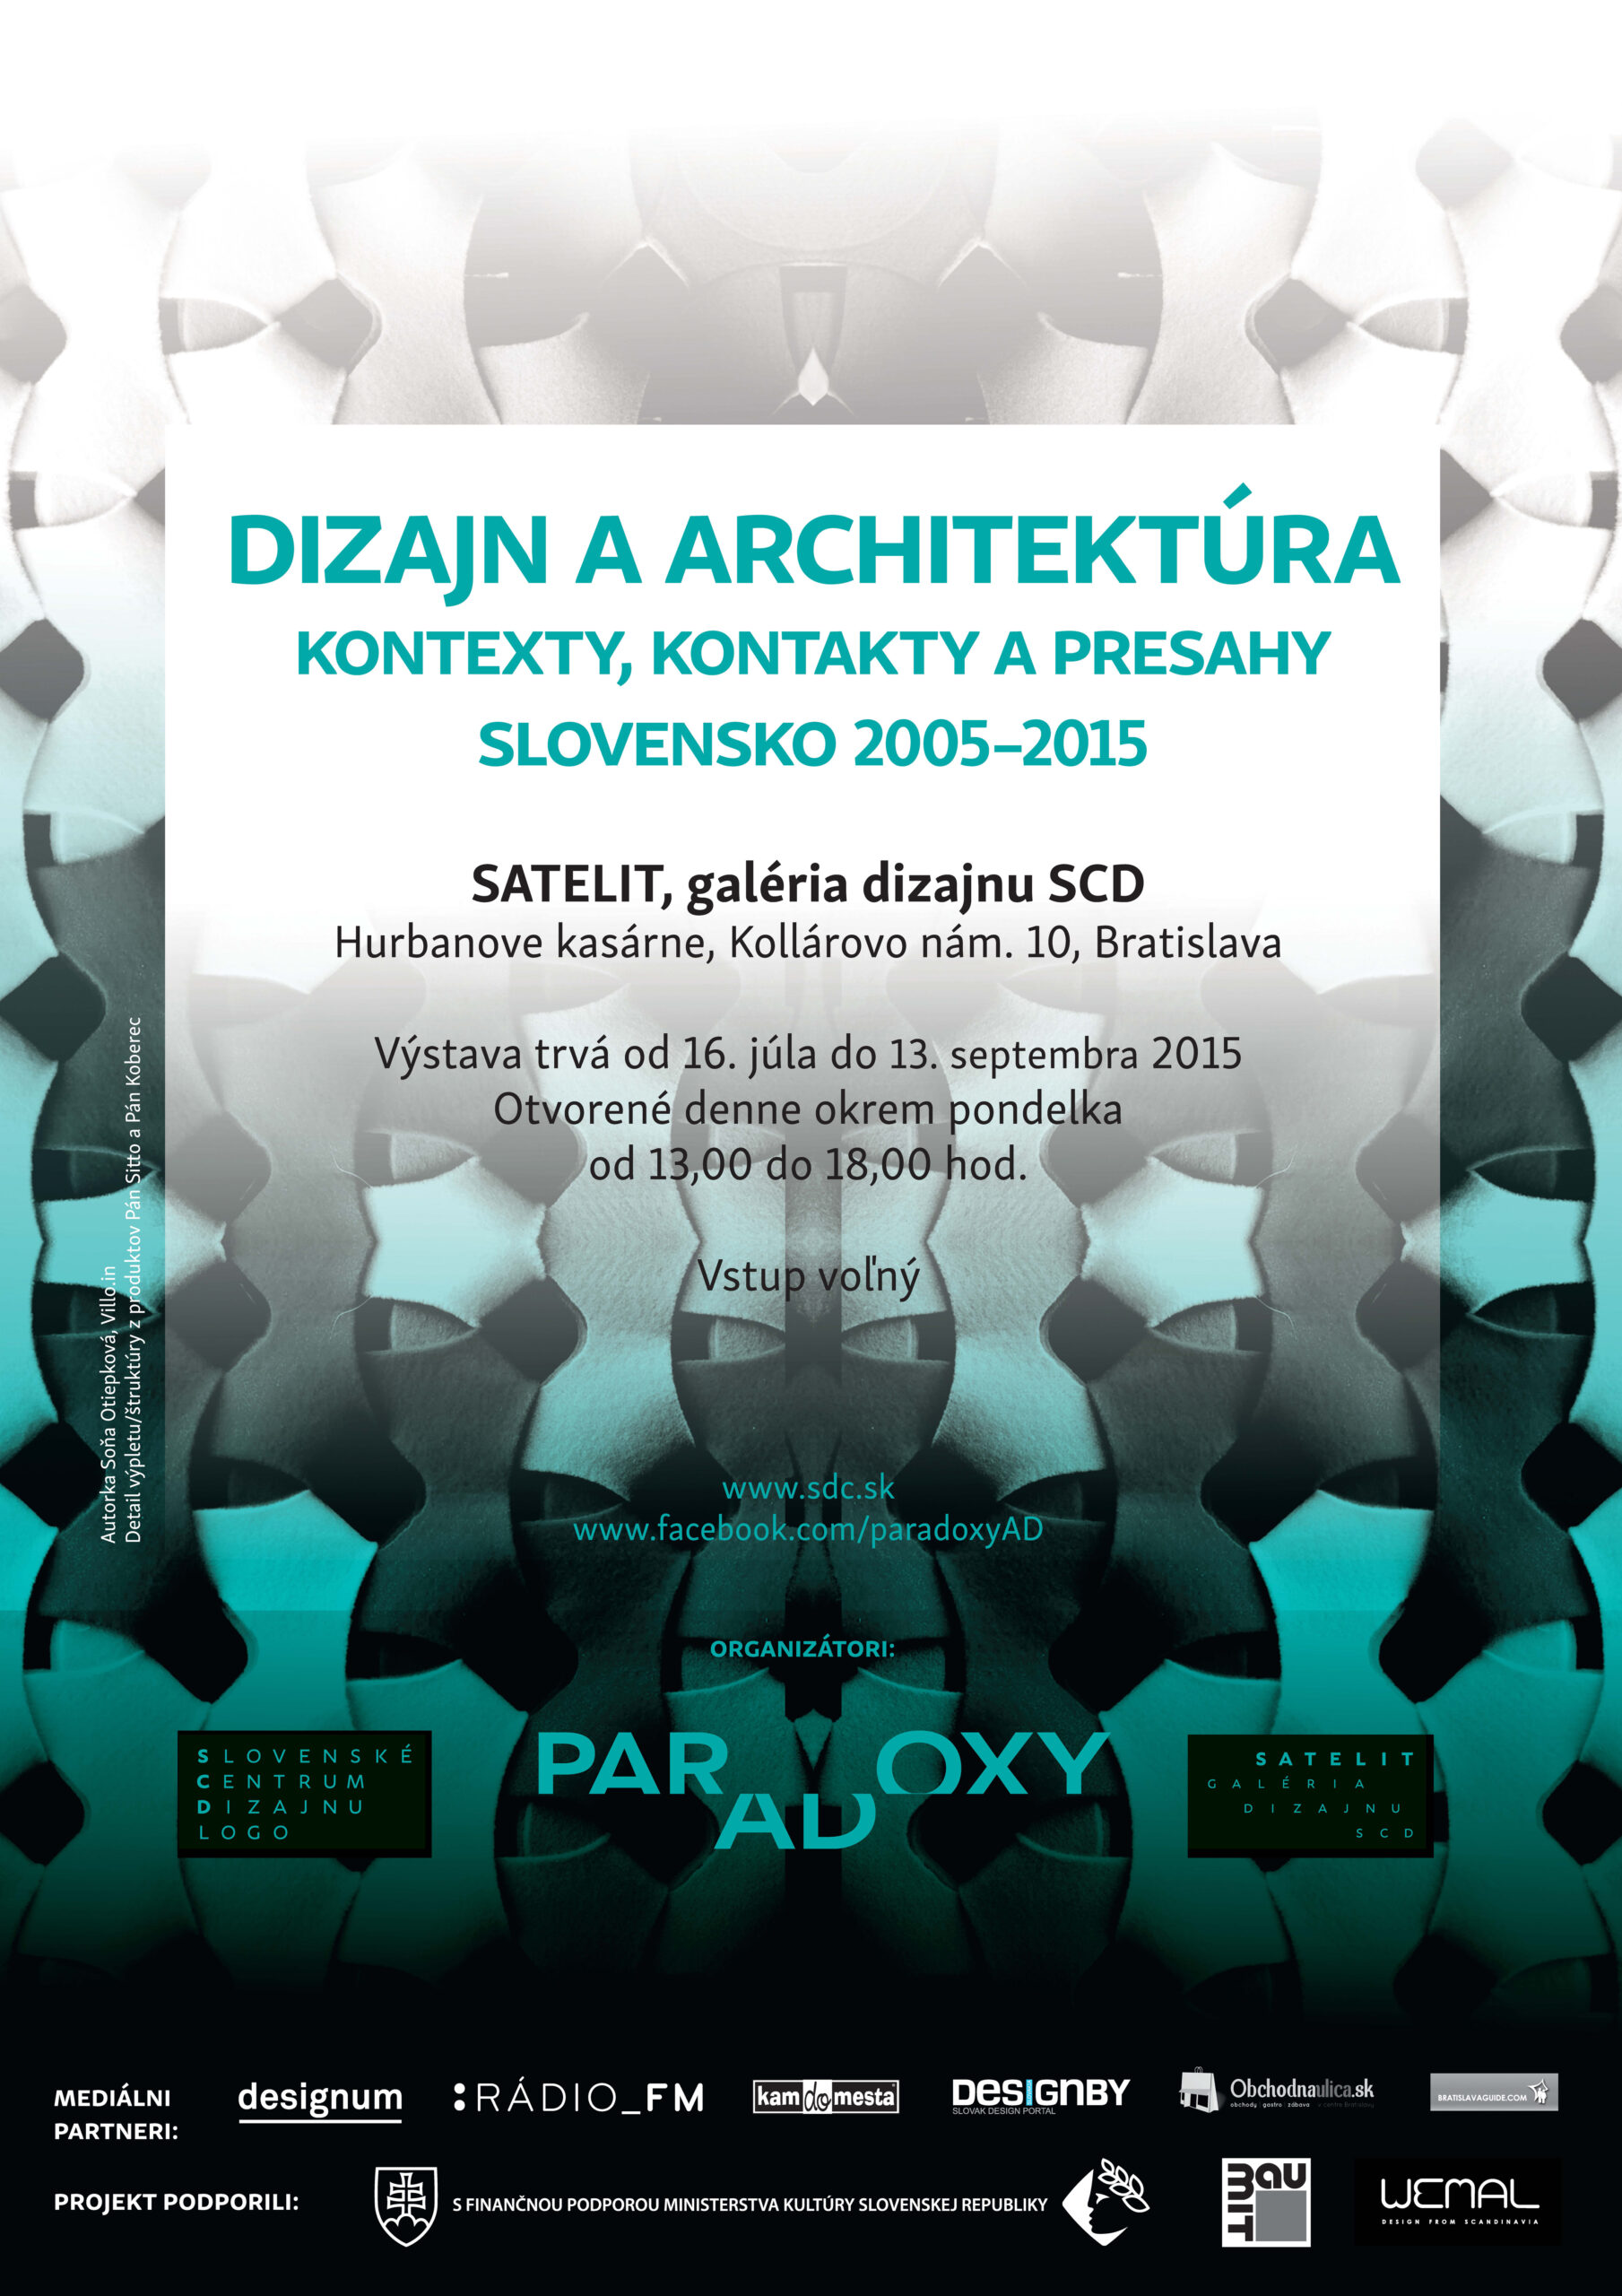 Dizajn a architektúra. Kontexty, kontakty a presahy. Slovensko 2005-2015